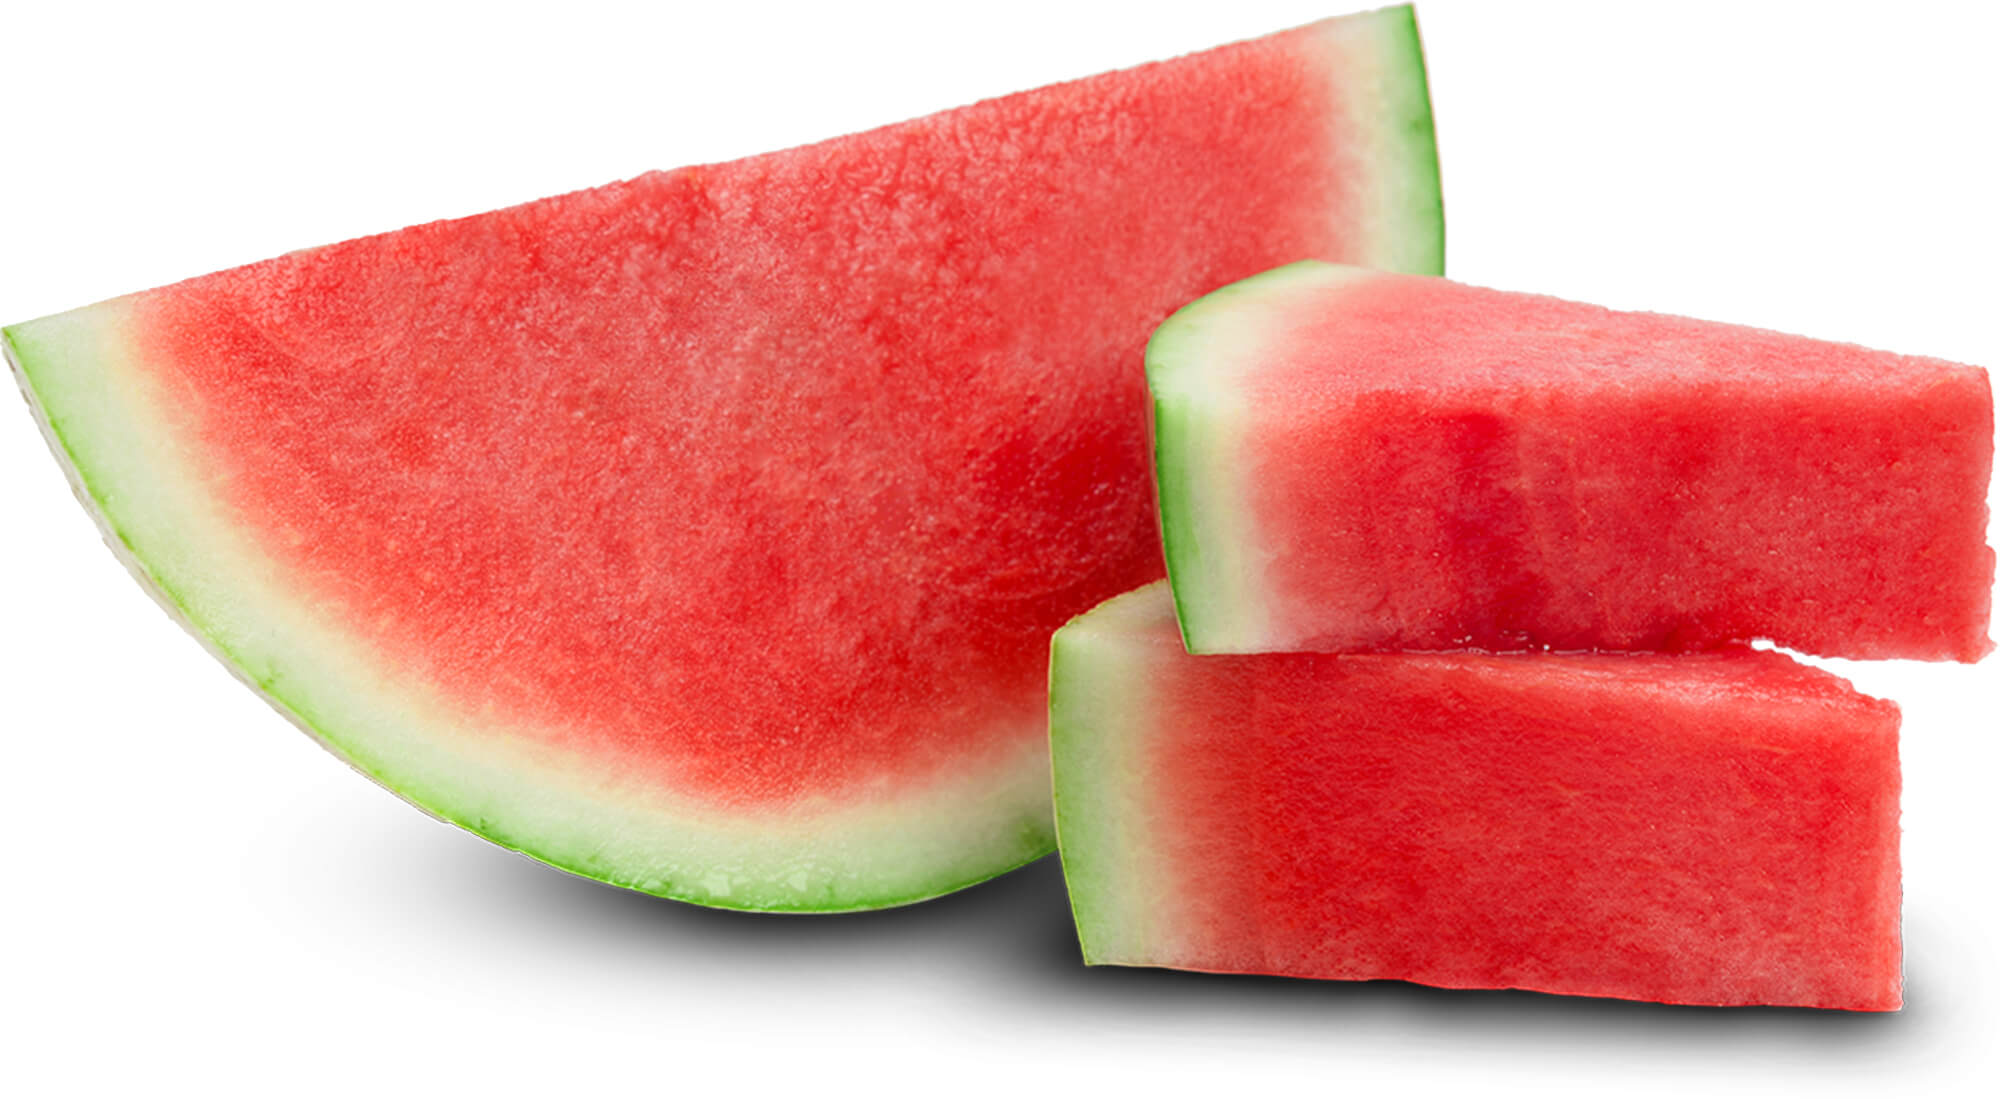 watermelon baackground image